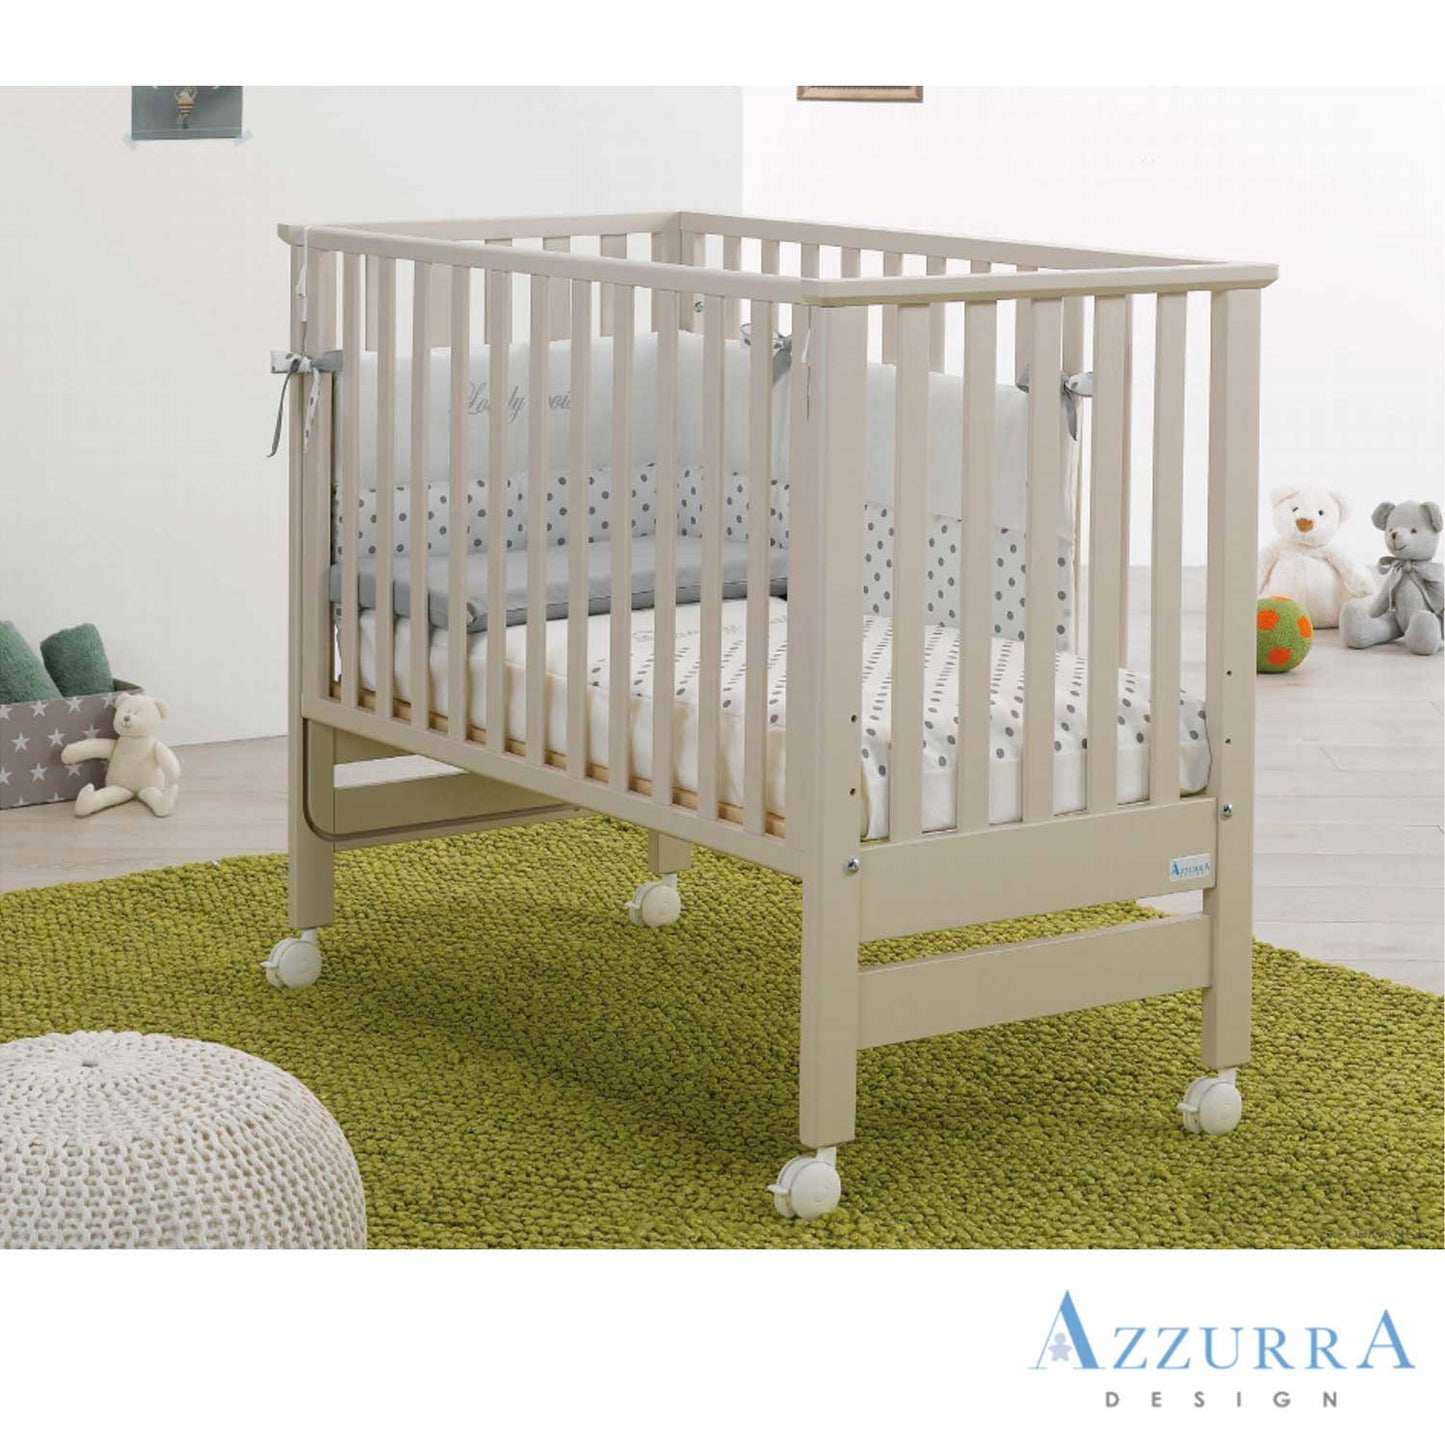 Azzurra Design - Lettino Culla co-sleeping Contact  Materasso Compreso